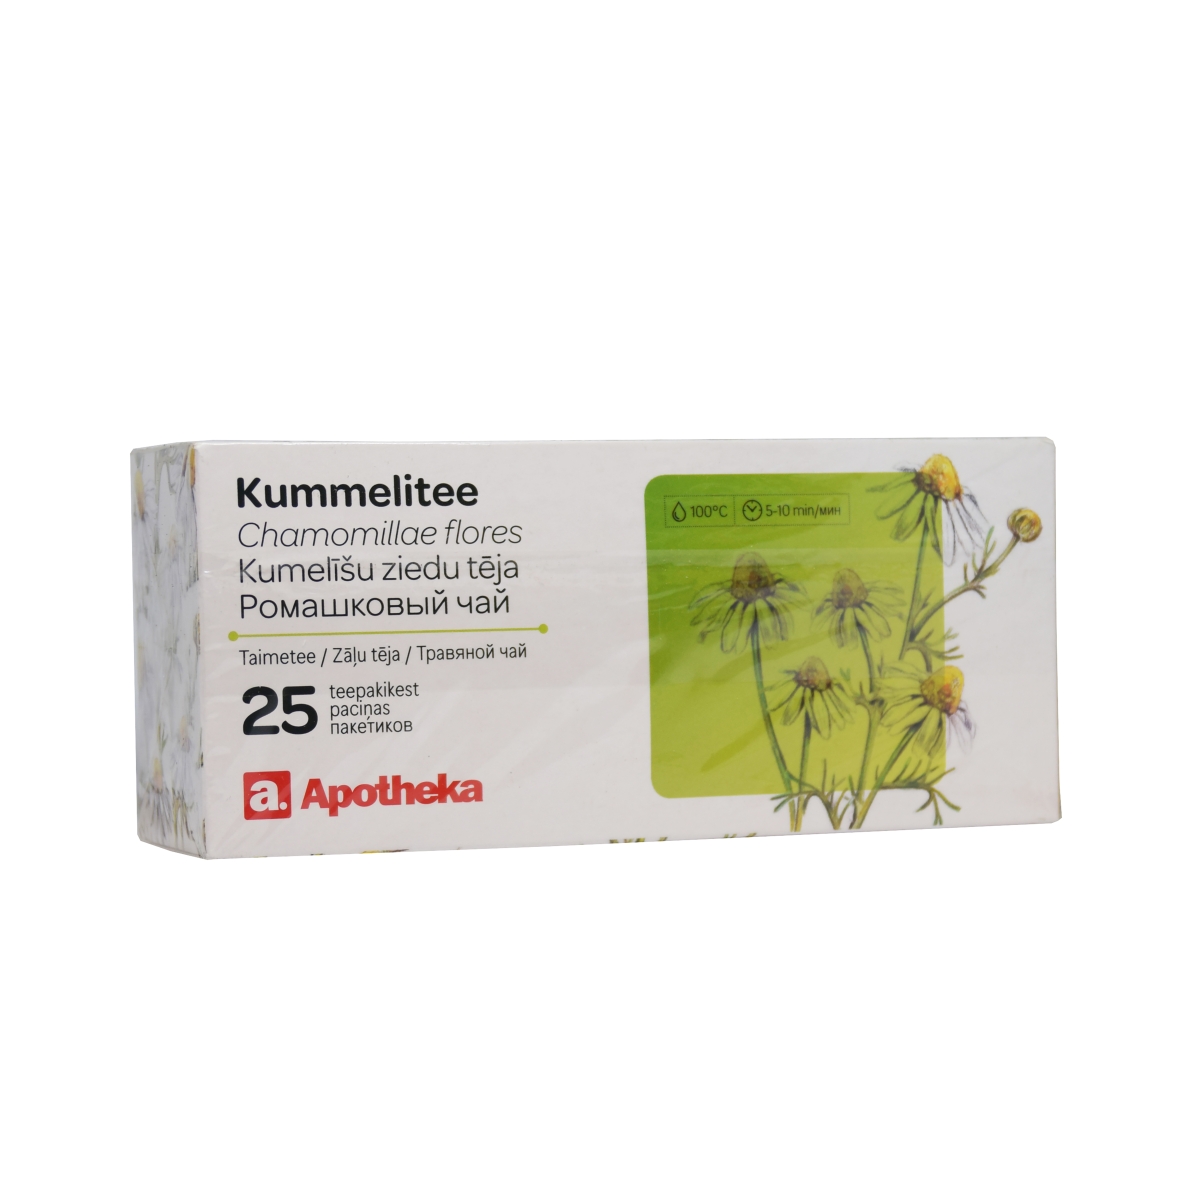 A. KUMMELITEE (CHAMOMILLAE FLORES) 1G N25